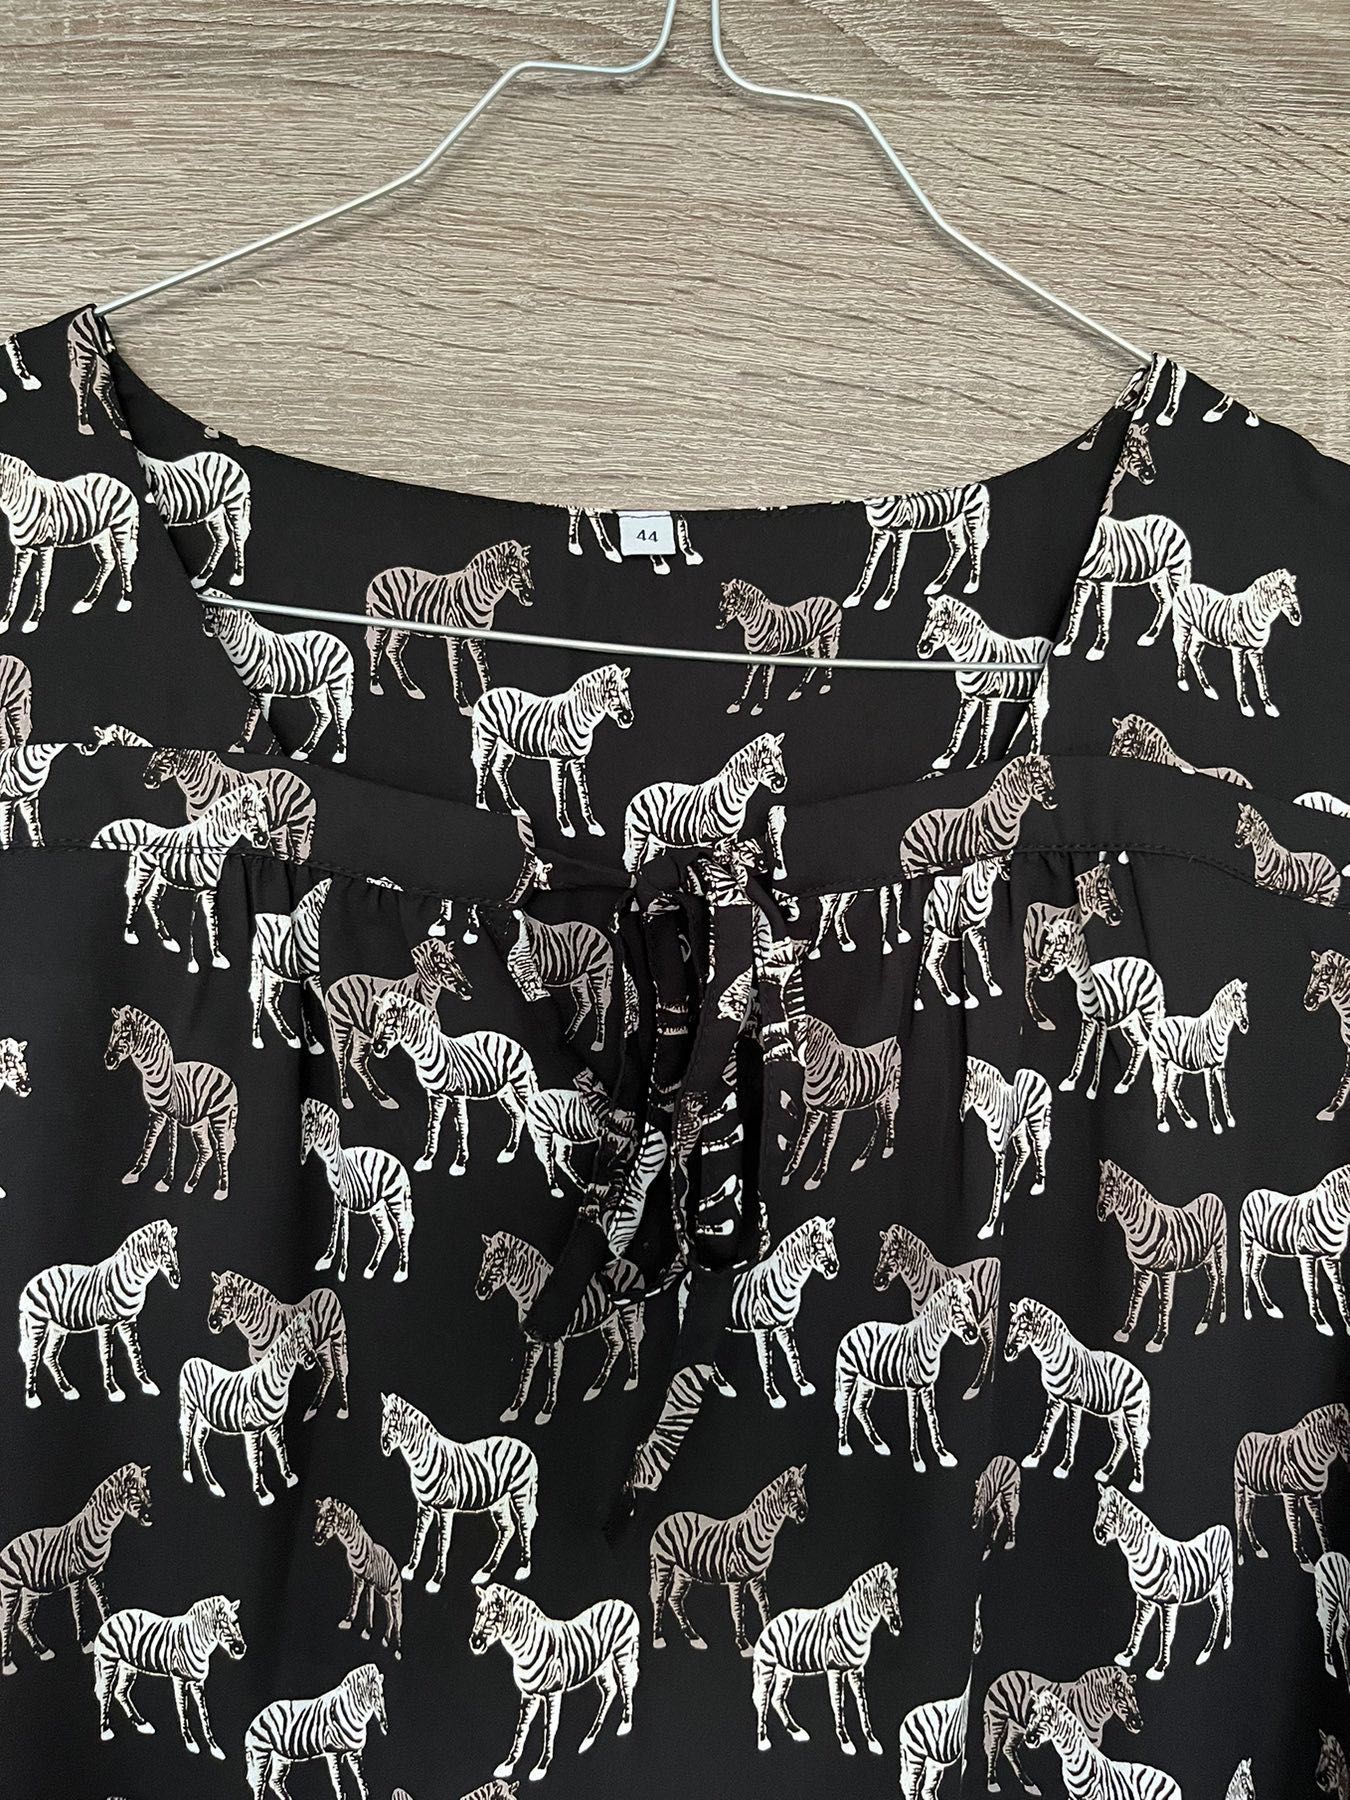 Дамска риза със зебри